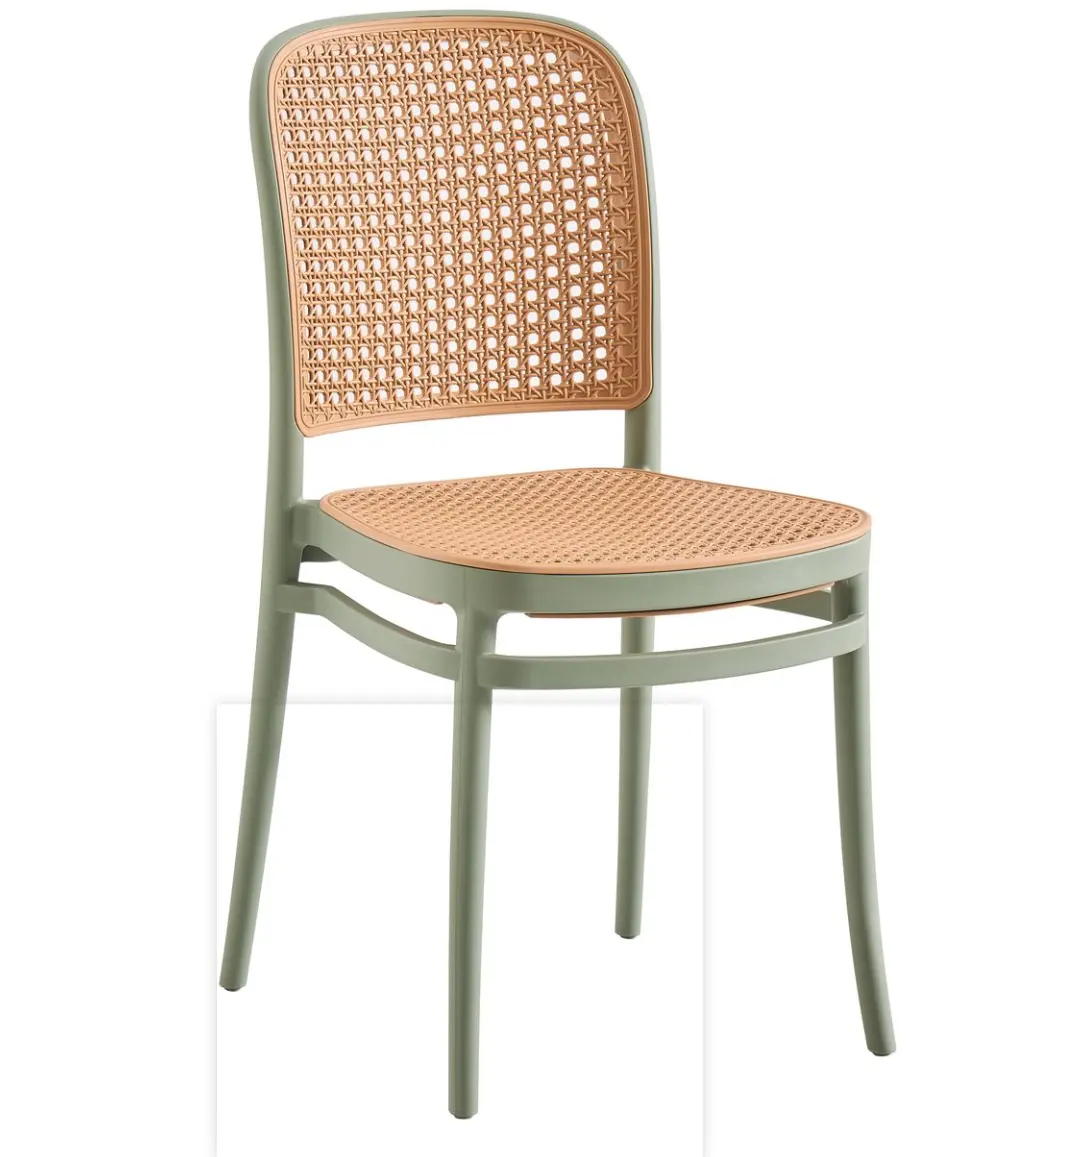 Vendita calda di alta qualità PP sedia ristorante e mobili per la casa colorati impilabili sedia di plastica sedia da pranzo